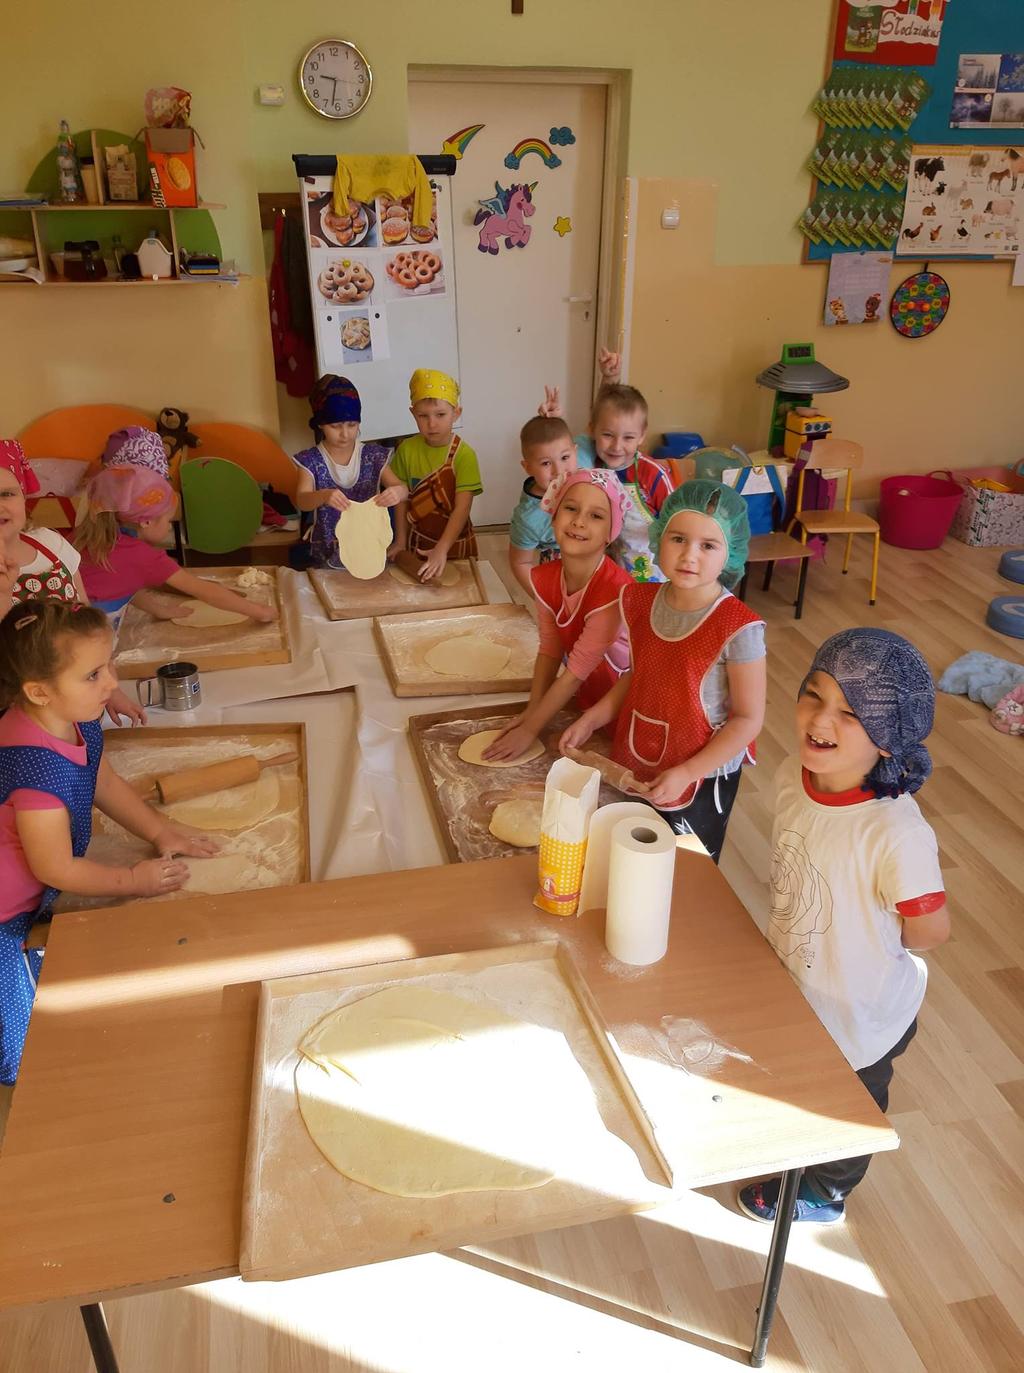 Polska Times Numer 13 03/2019 Strona 2 wwwpolskatimespl Nasze przedszkole zamieniło się dziś w piekarnię z małymi cukiernikami i piekarzami na czele Panie przedszkolanki pokazały dzieciom, jakie